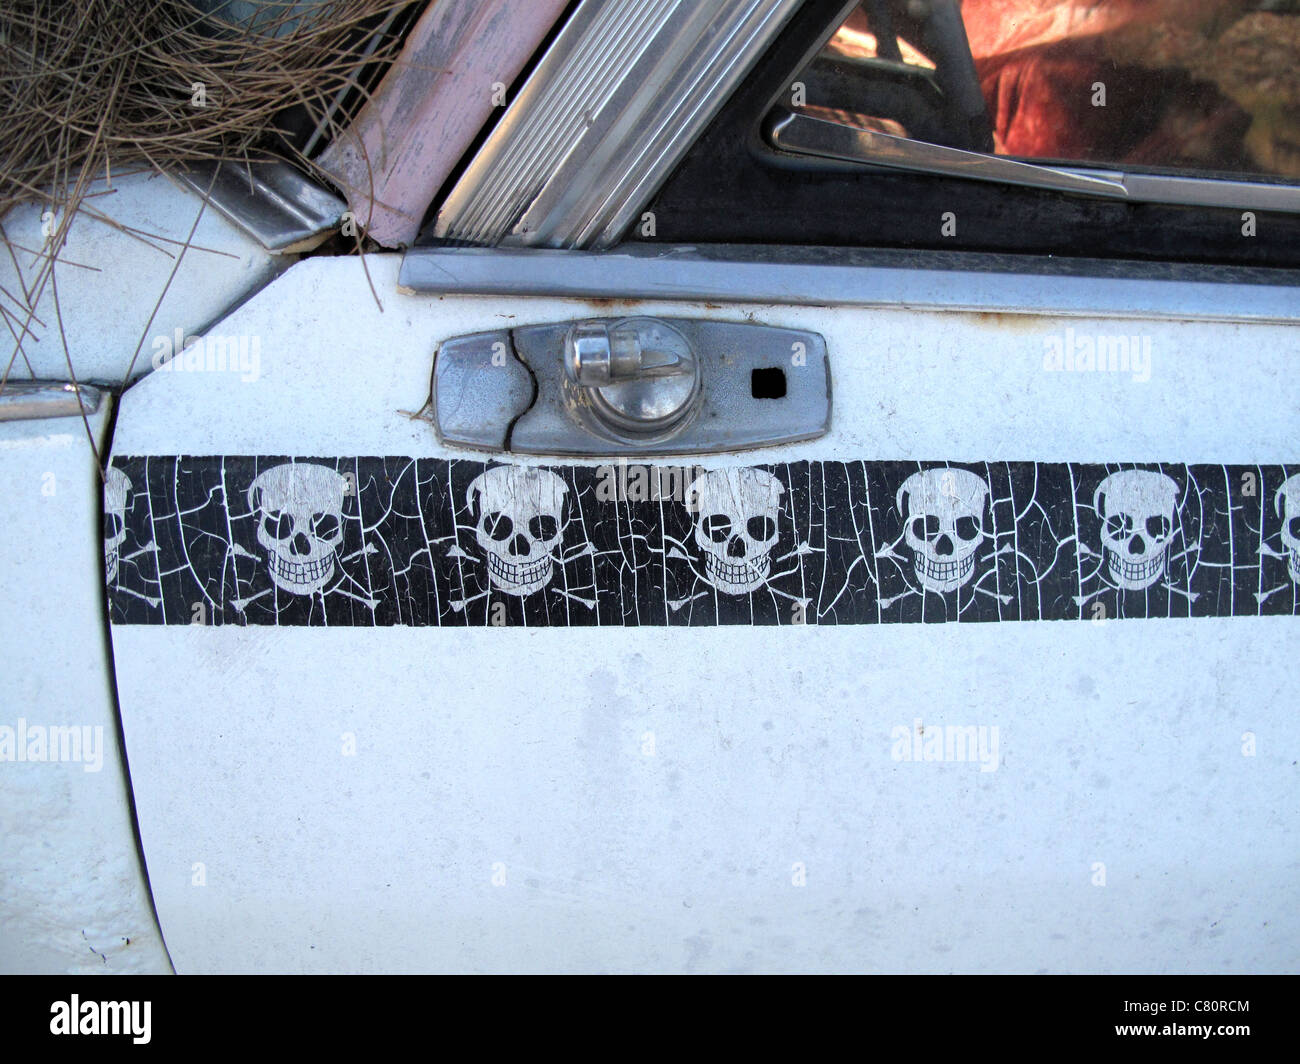 Autocollant crâne fendu sur une vieille voiture abandonnée Banque D'Images